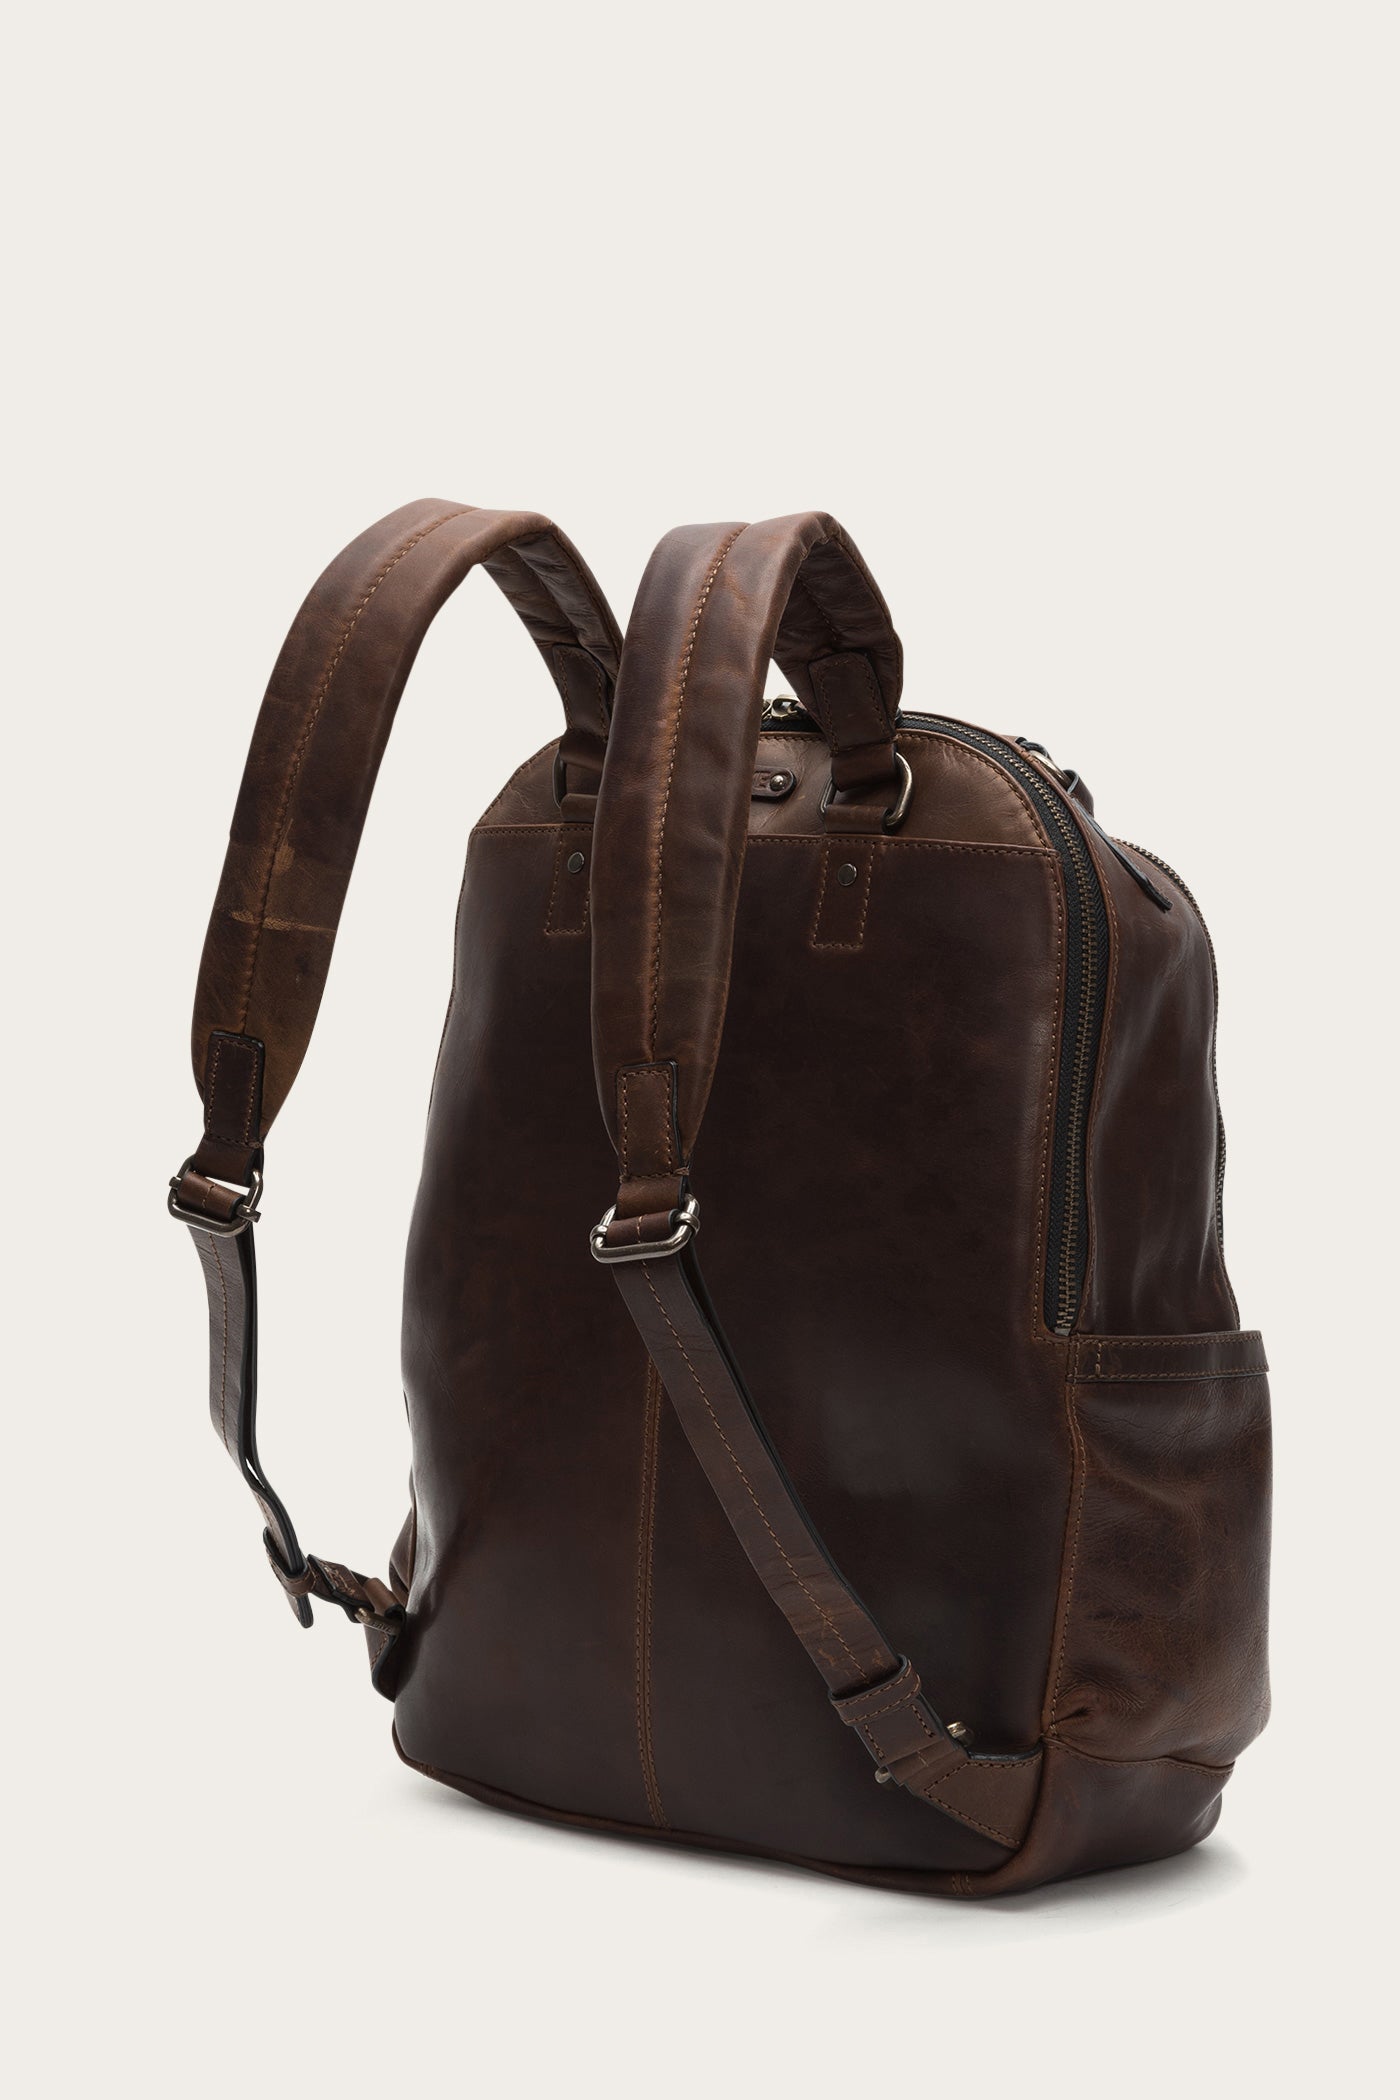 Logan Backpack | The Frye Company